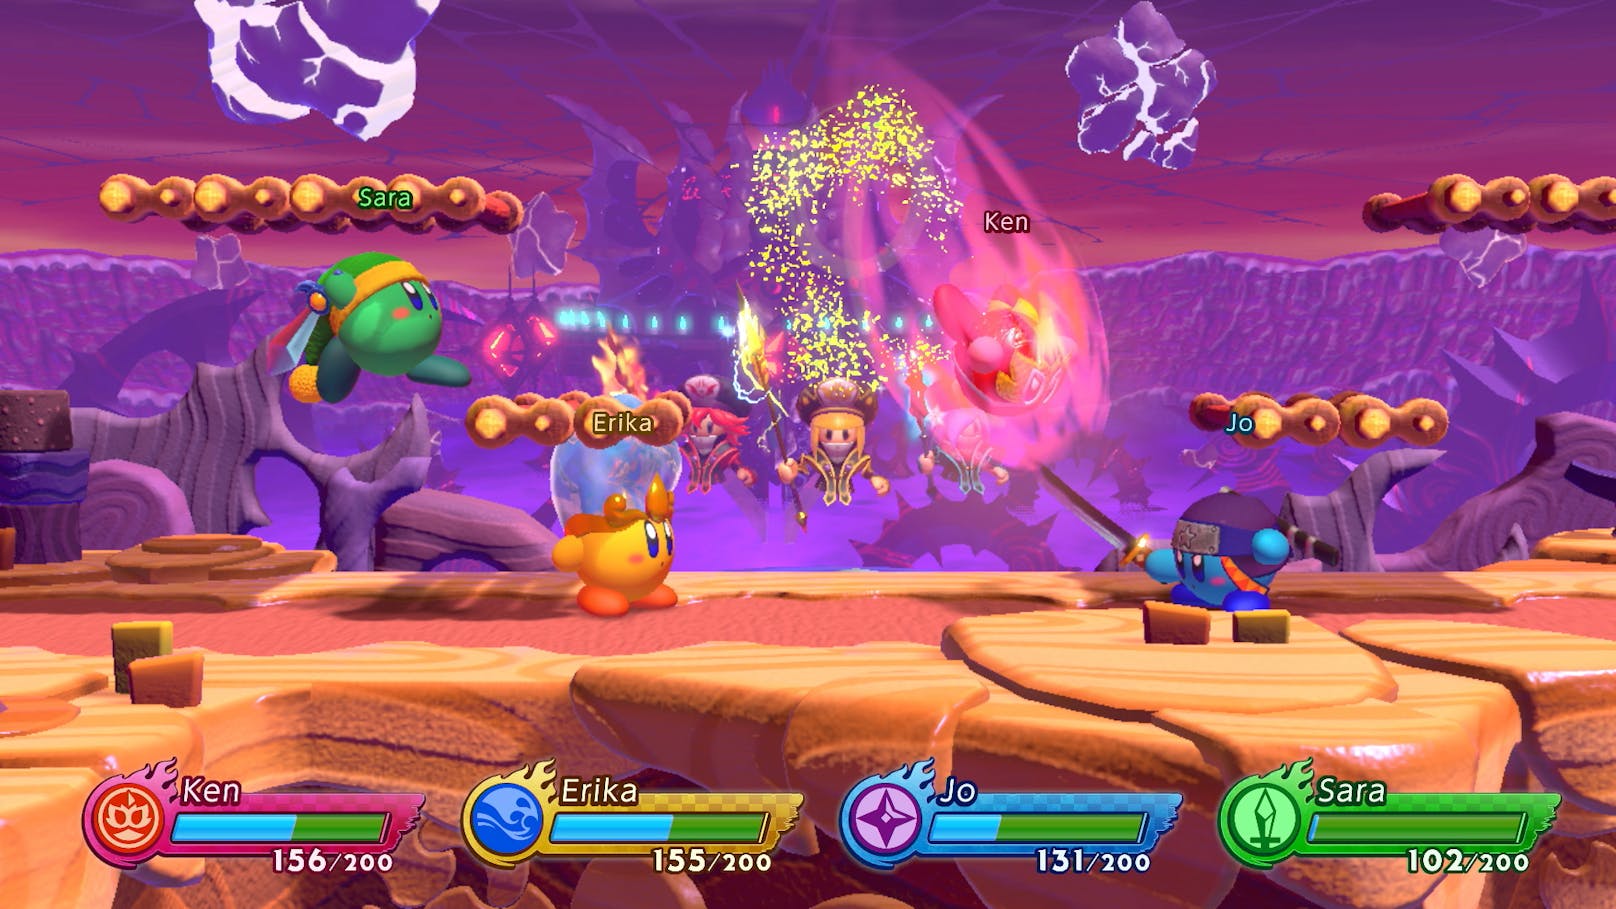 Die verschiedenen Kirbys steuern sich übrigens nicht nur unterschiedlich je nach Ausrüstung, sondern besitzen auch allesamt verschiedene Attacken, die insgesamt aber sehr übersichtlich bleiben.